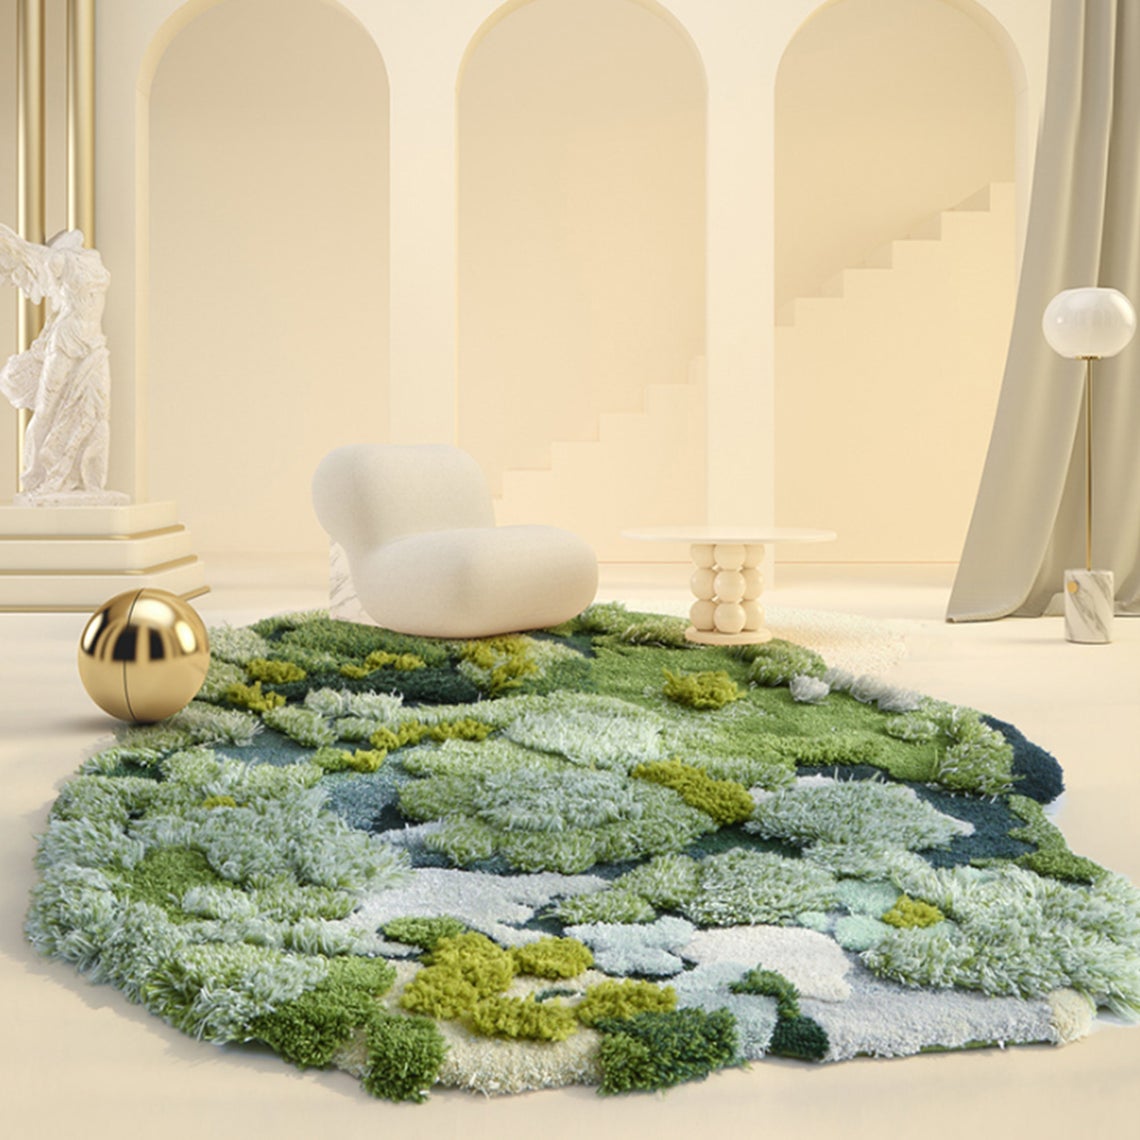 3D Mosses Carpet